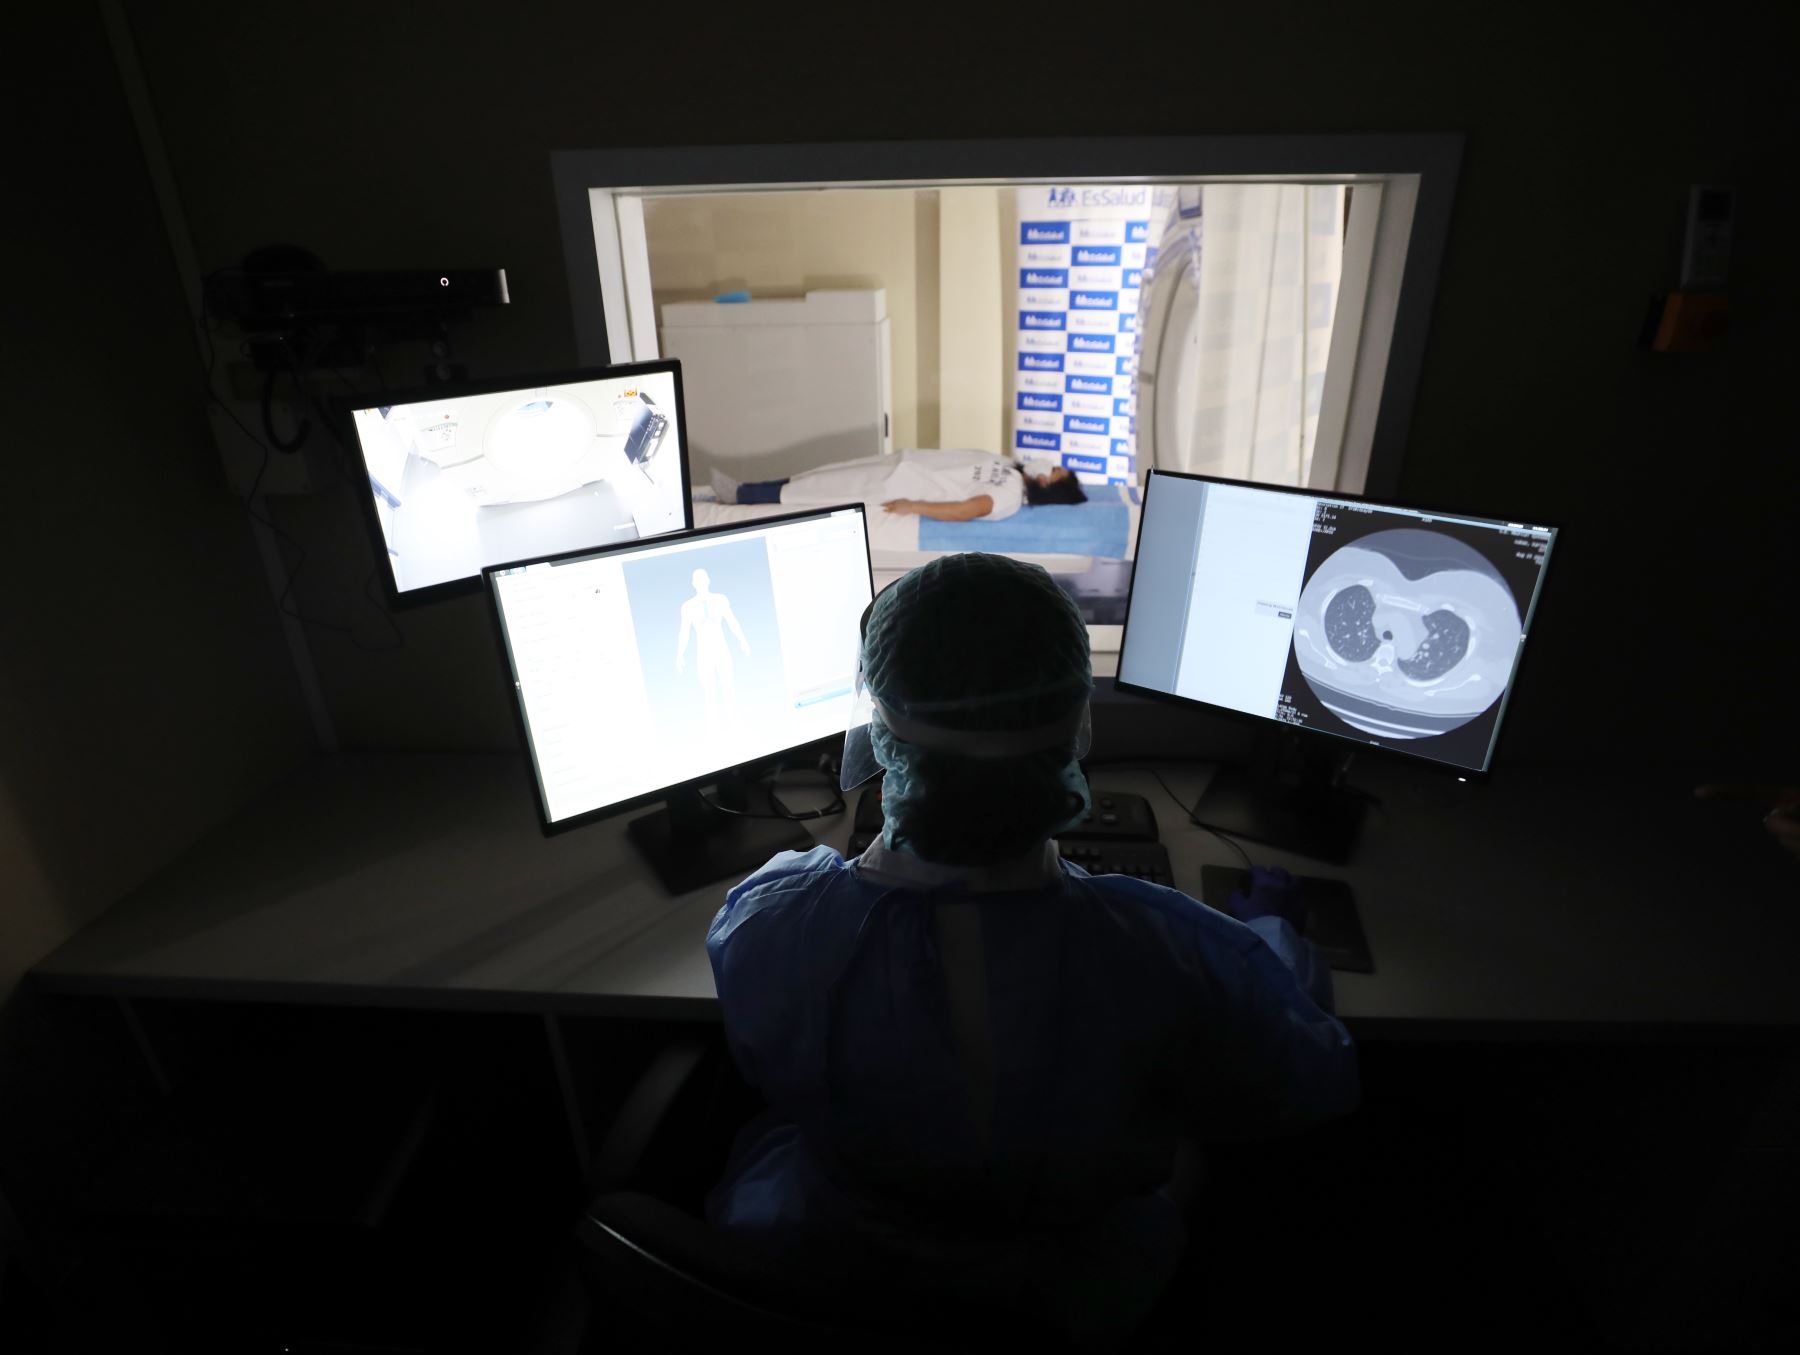 Essalud presentó tomografo de 256 cortes que permitirá dar diagnósticos de alta precisión, este equipo de alta gama fue instalado en el servicio de Tomografía y Resonancia Magnética del hospital Rebagliati.Foto:ANDINA Essalud